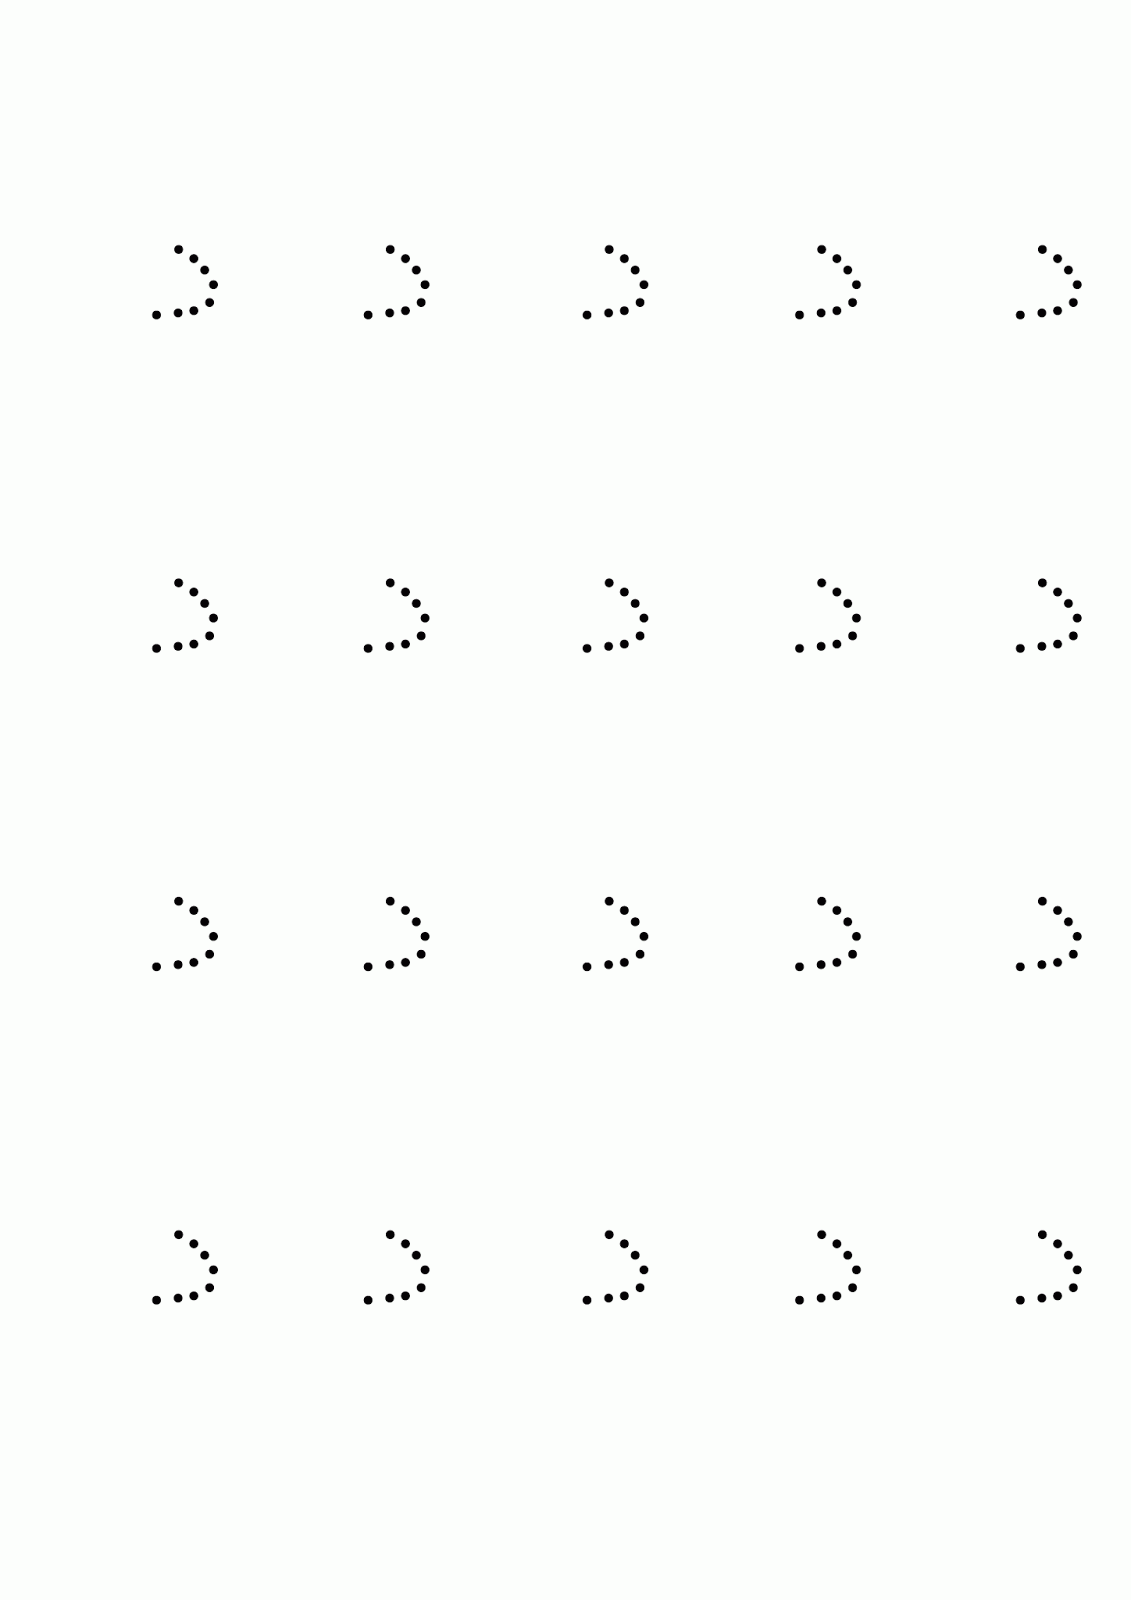 أوراق عمل الحروف الهجائية منقطة للطباعة - شمسات